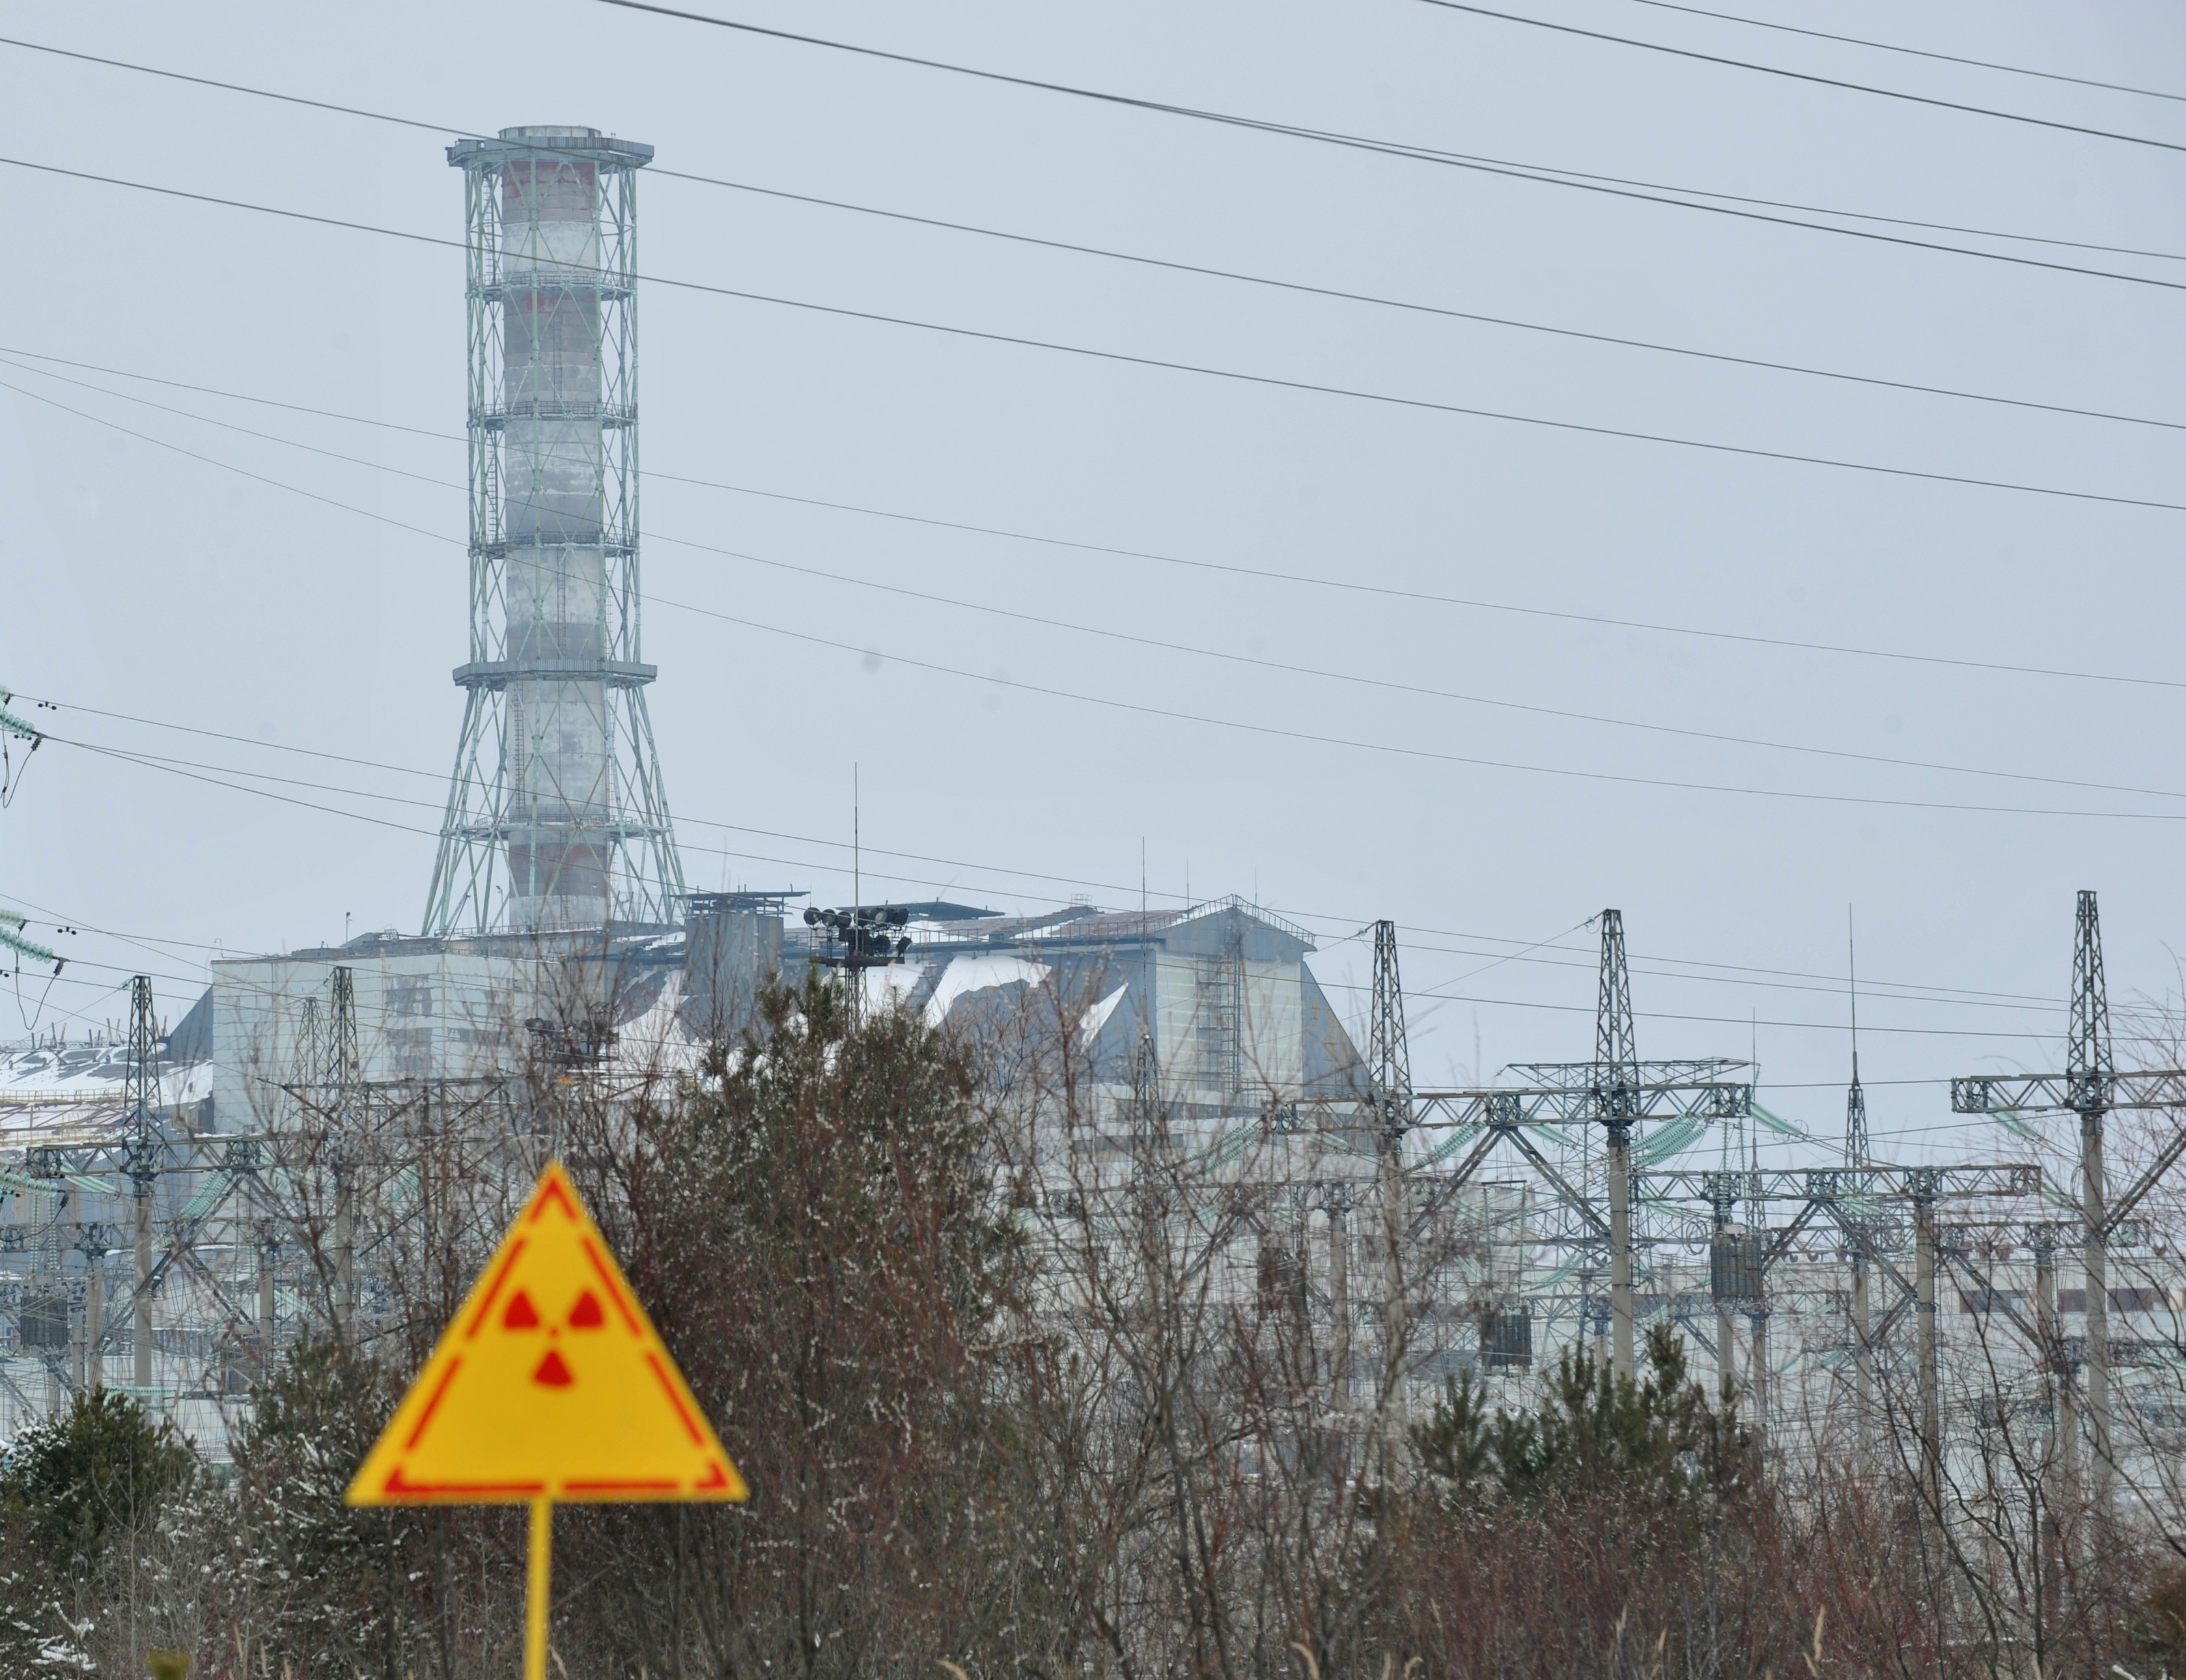 Зона взрыва аэс. АЭС Чернобыль радиация. Чернобыльская АЭС выброс радиации. Чернобыль зона авария АЭС. Чернобыль ЧАЭС радиационное место.